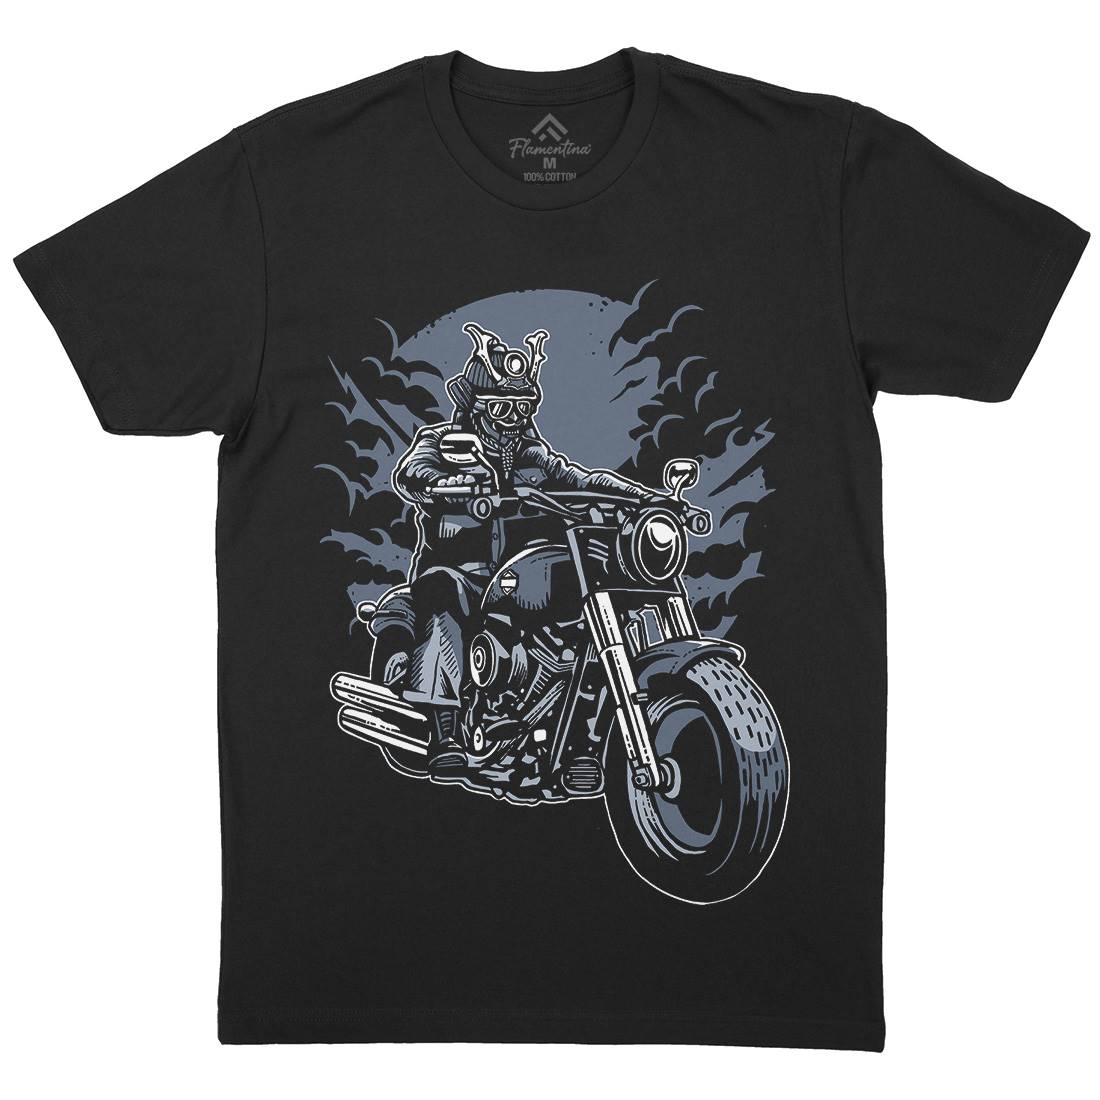 Samurai Ride Mens Organic Crew Neck T-Shirt Warriors A568